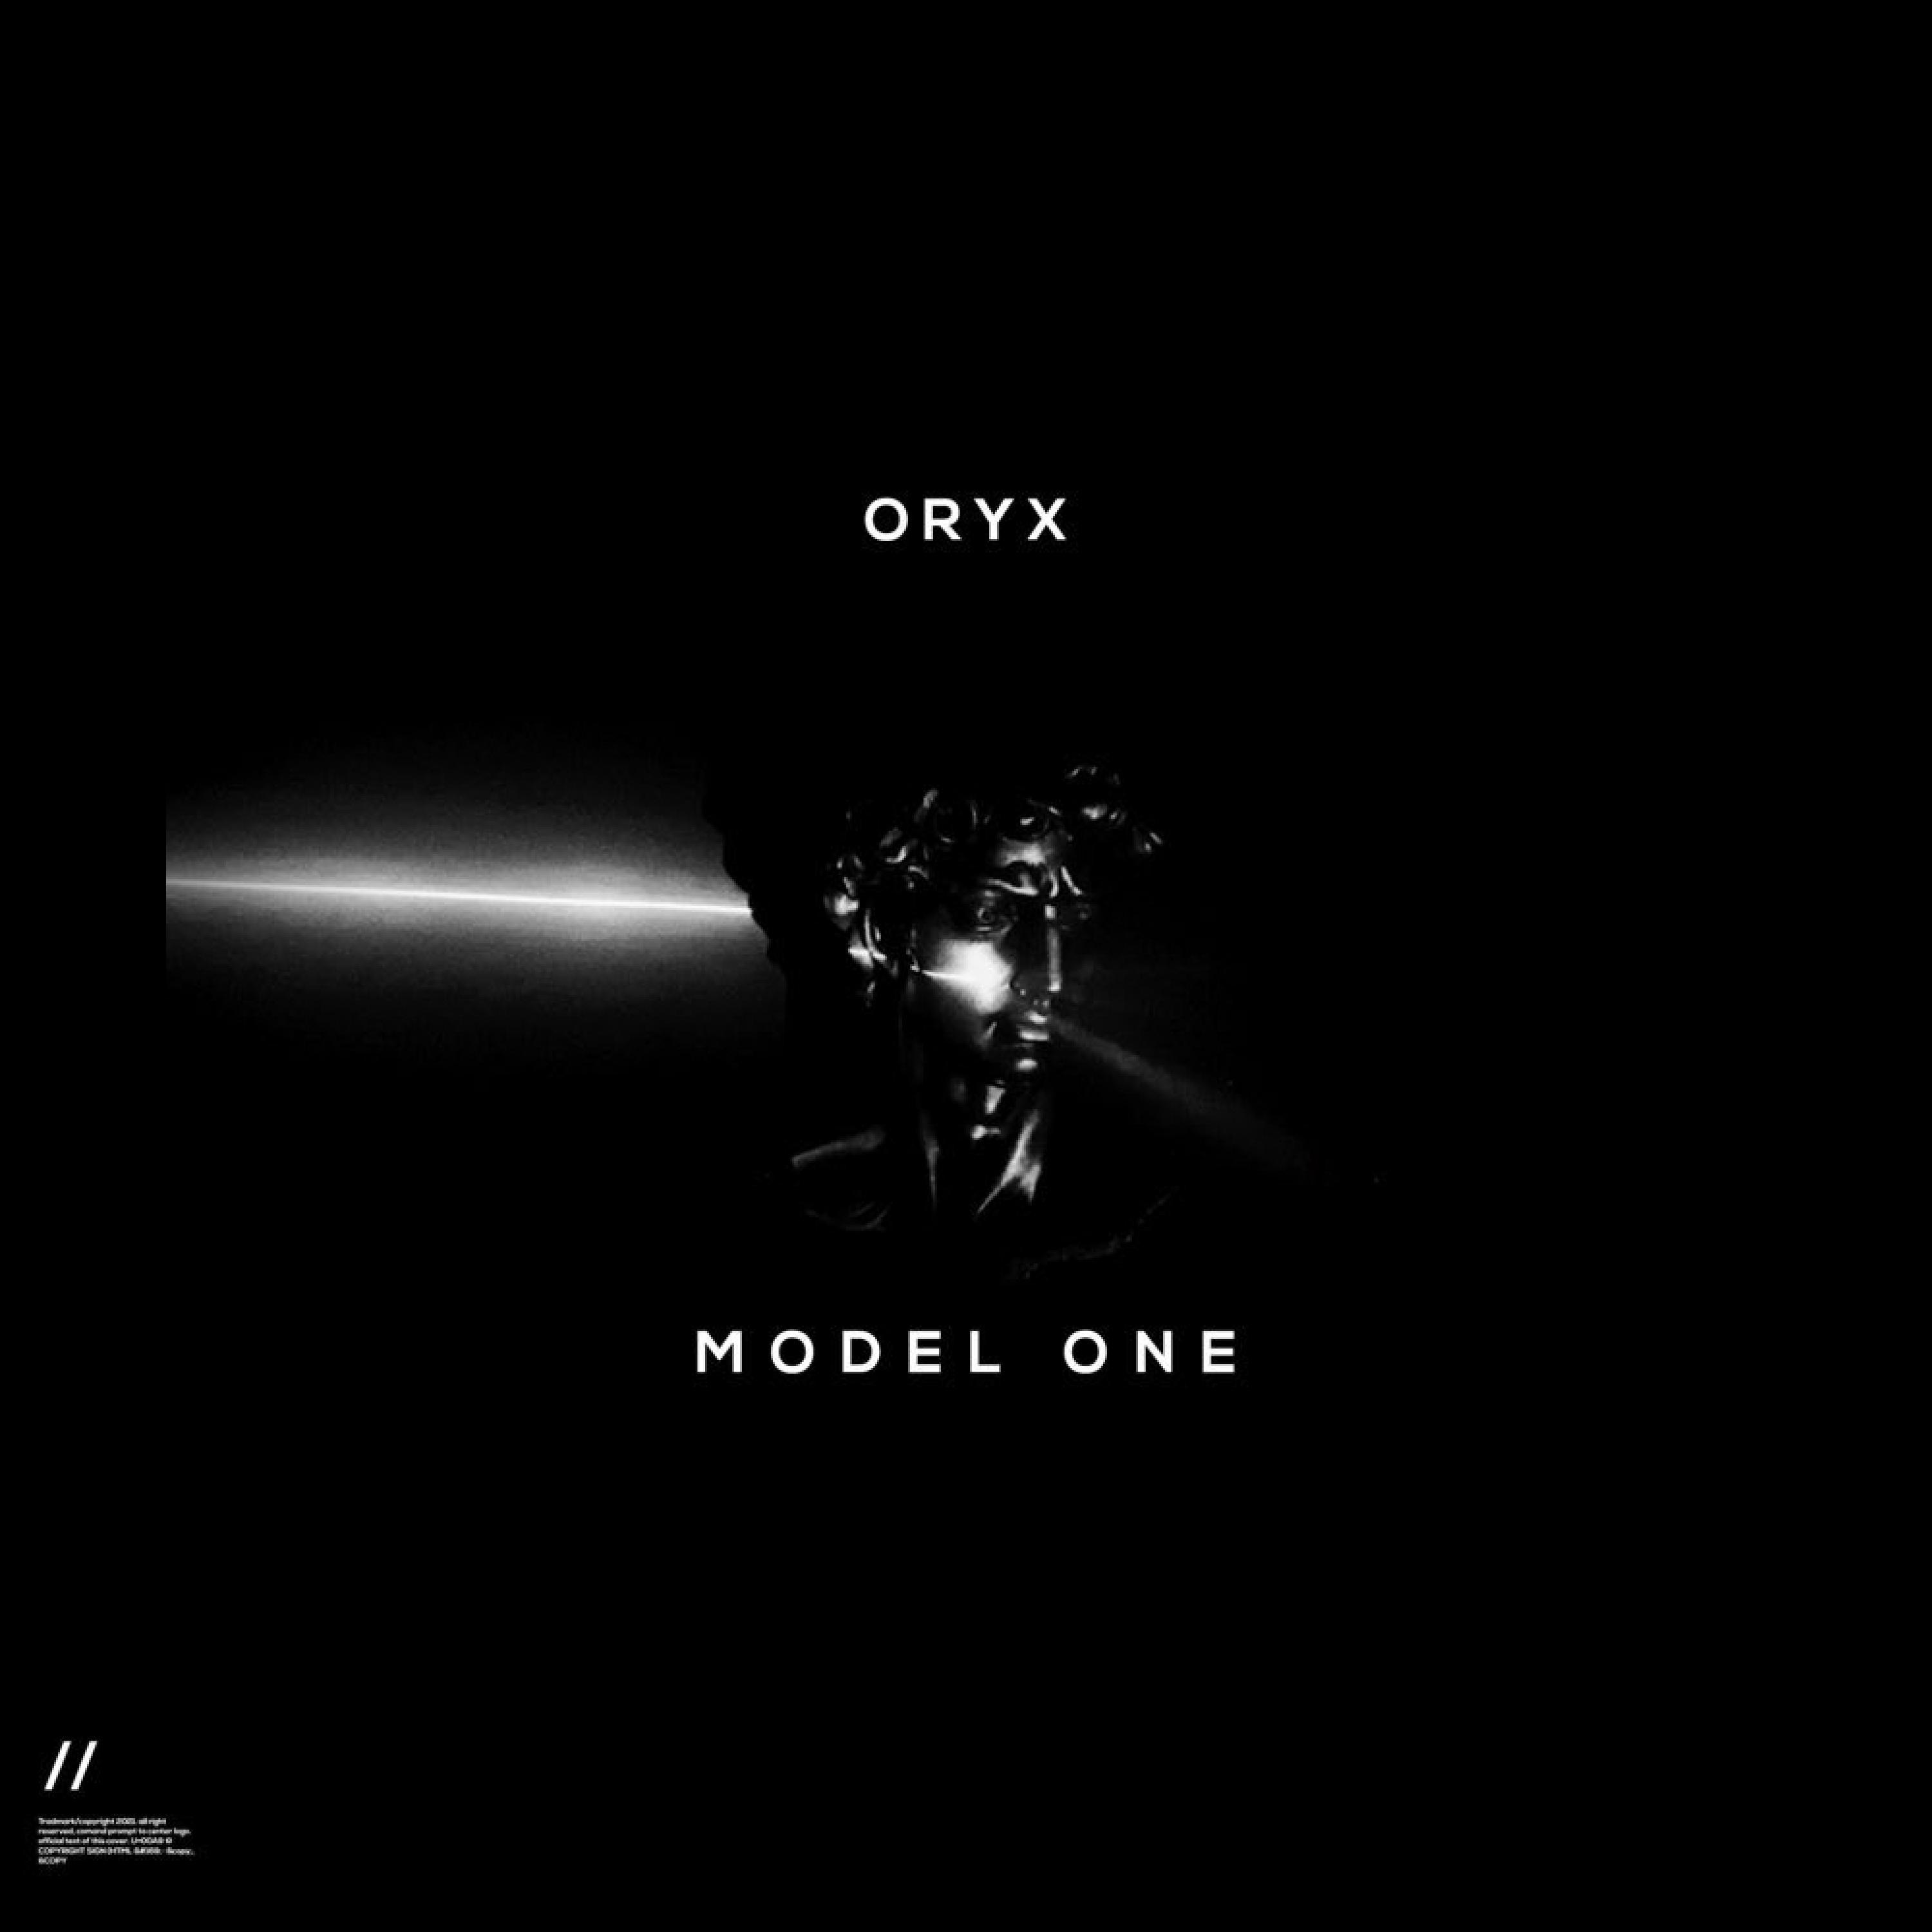 Oryx - Alone